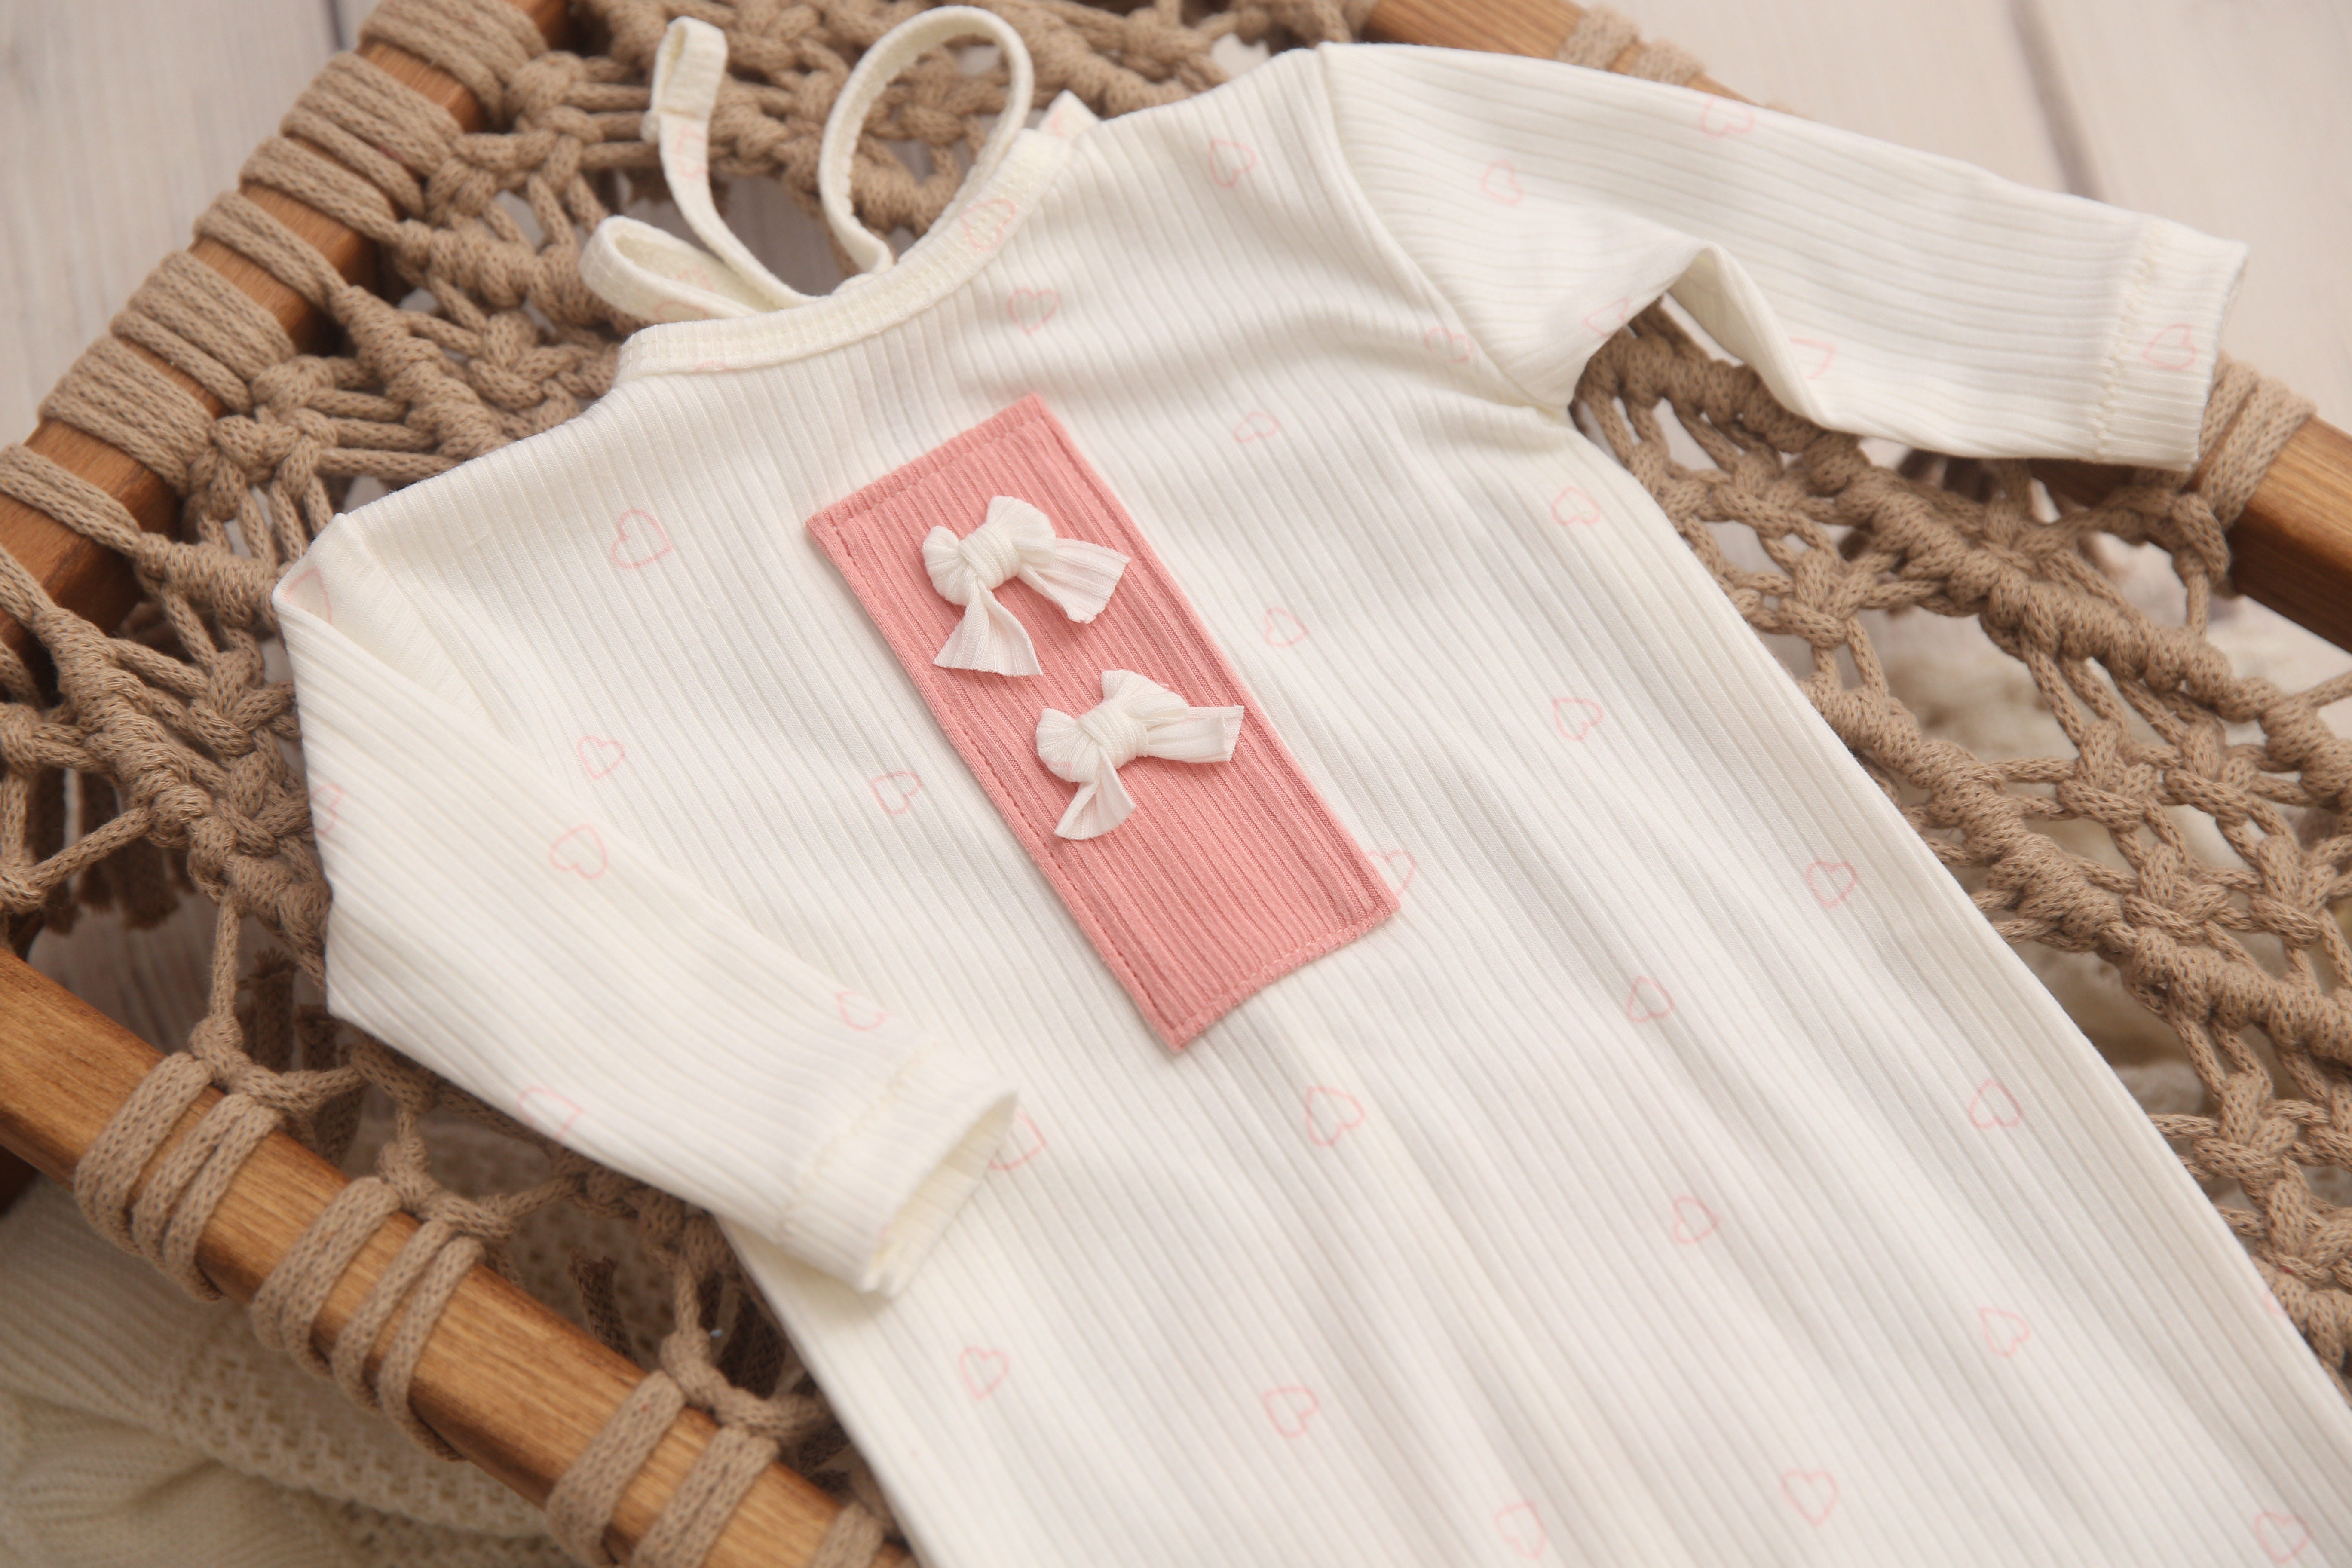 Newborn Girl Footie Jammies- White Valentine Hearts- Made to Order